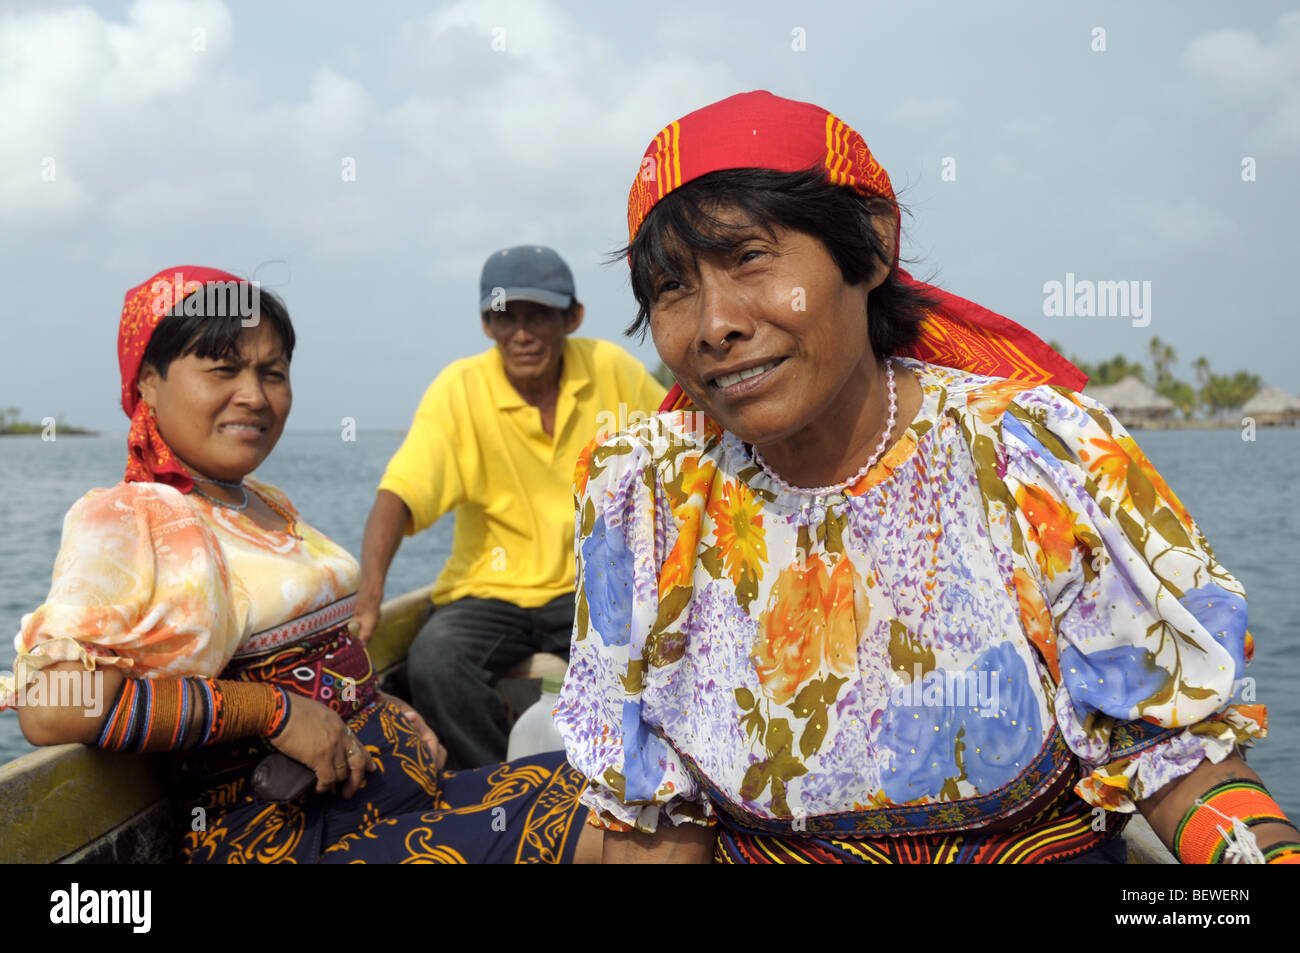 Kuna People In A Baota Off Yandup Island Lodge In Playon Chico In The San Blas Islands Panama Stock Photo